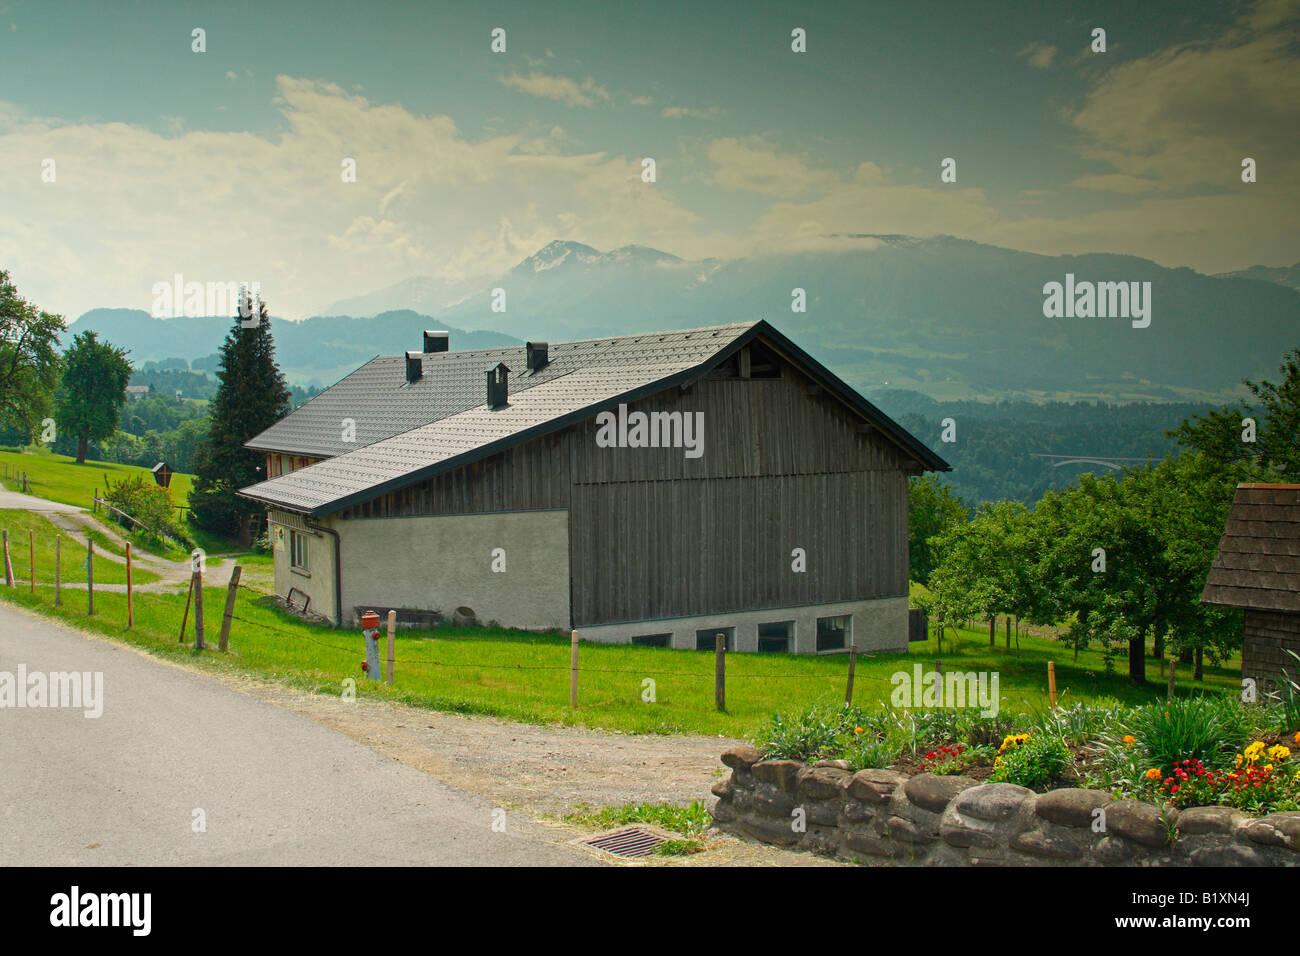 Alpine scene, near village of Langenegg, district of Bregenzerwald, Vorarlberg region, Austria Stock Photo